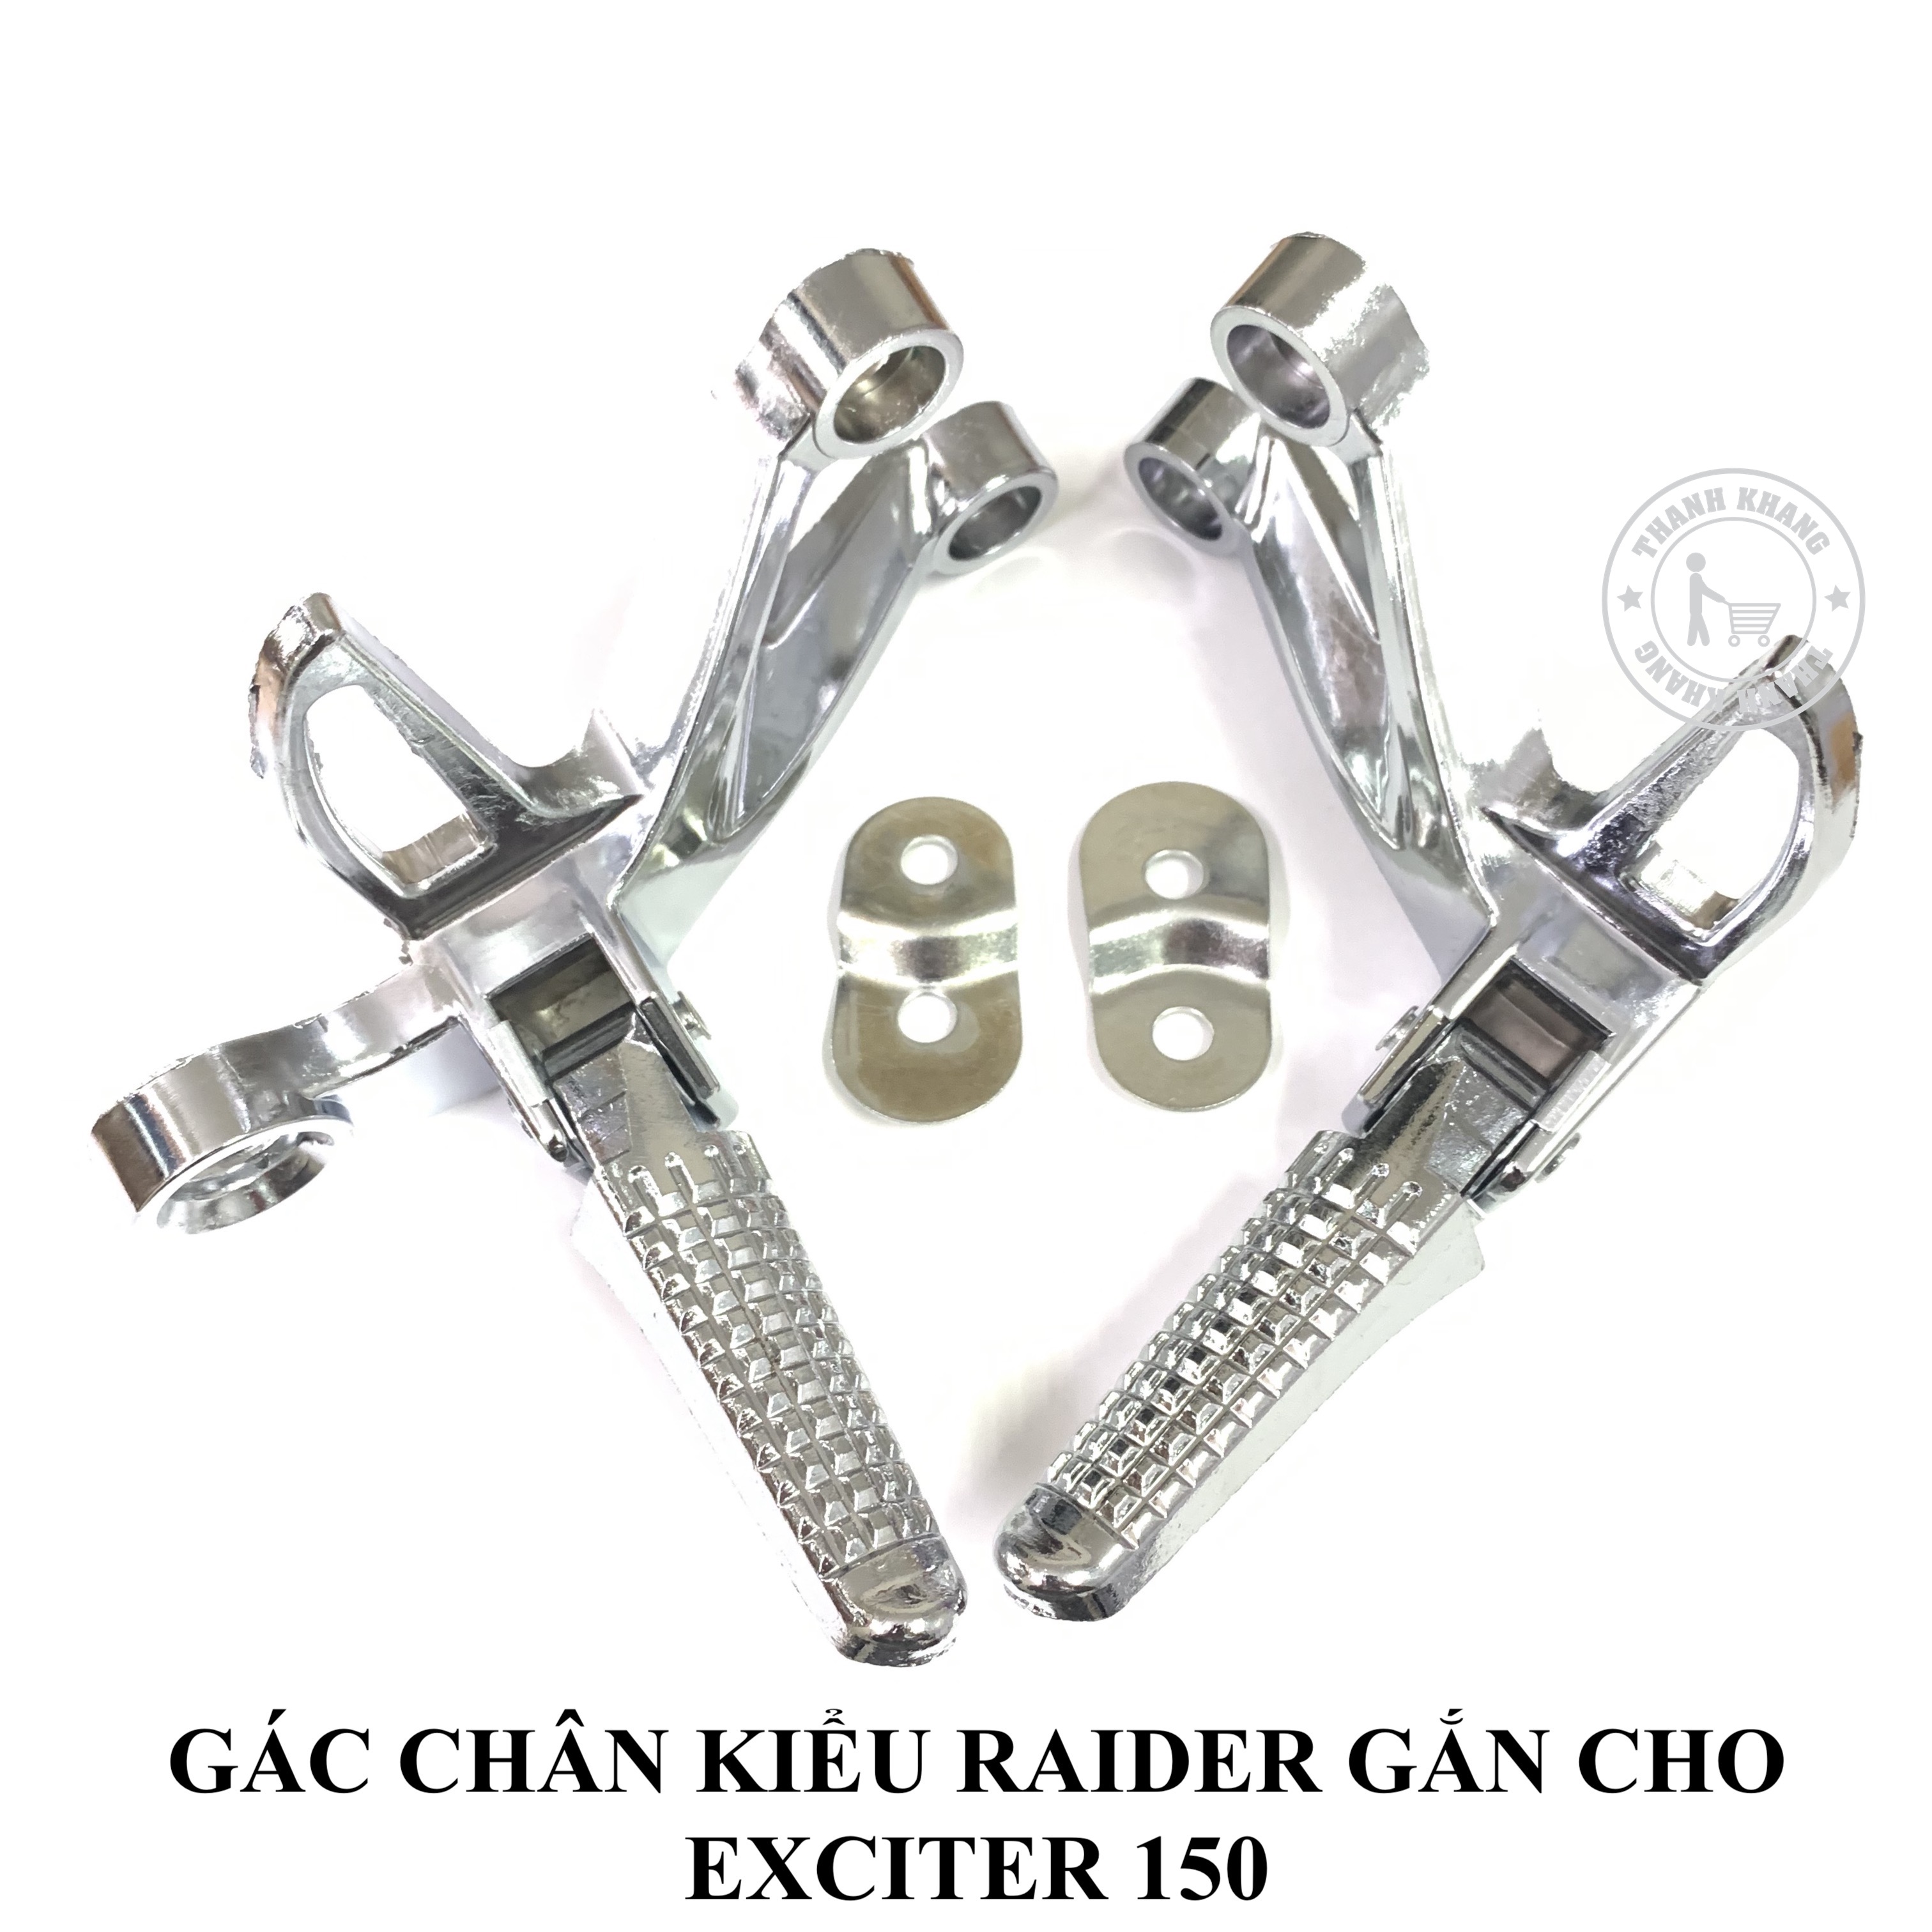 Gác chân kiểu raider gắn cho exciter 150 có 2 màu bạc hoặc đen,thiết kế ấn tượng,tinh xảo CGV285